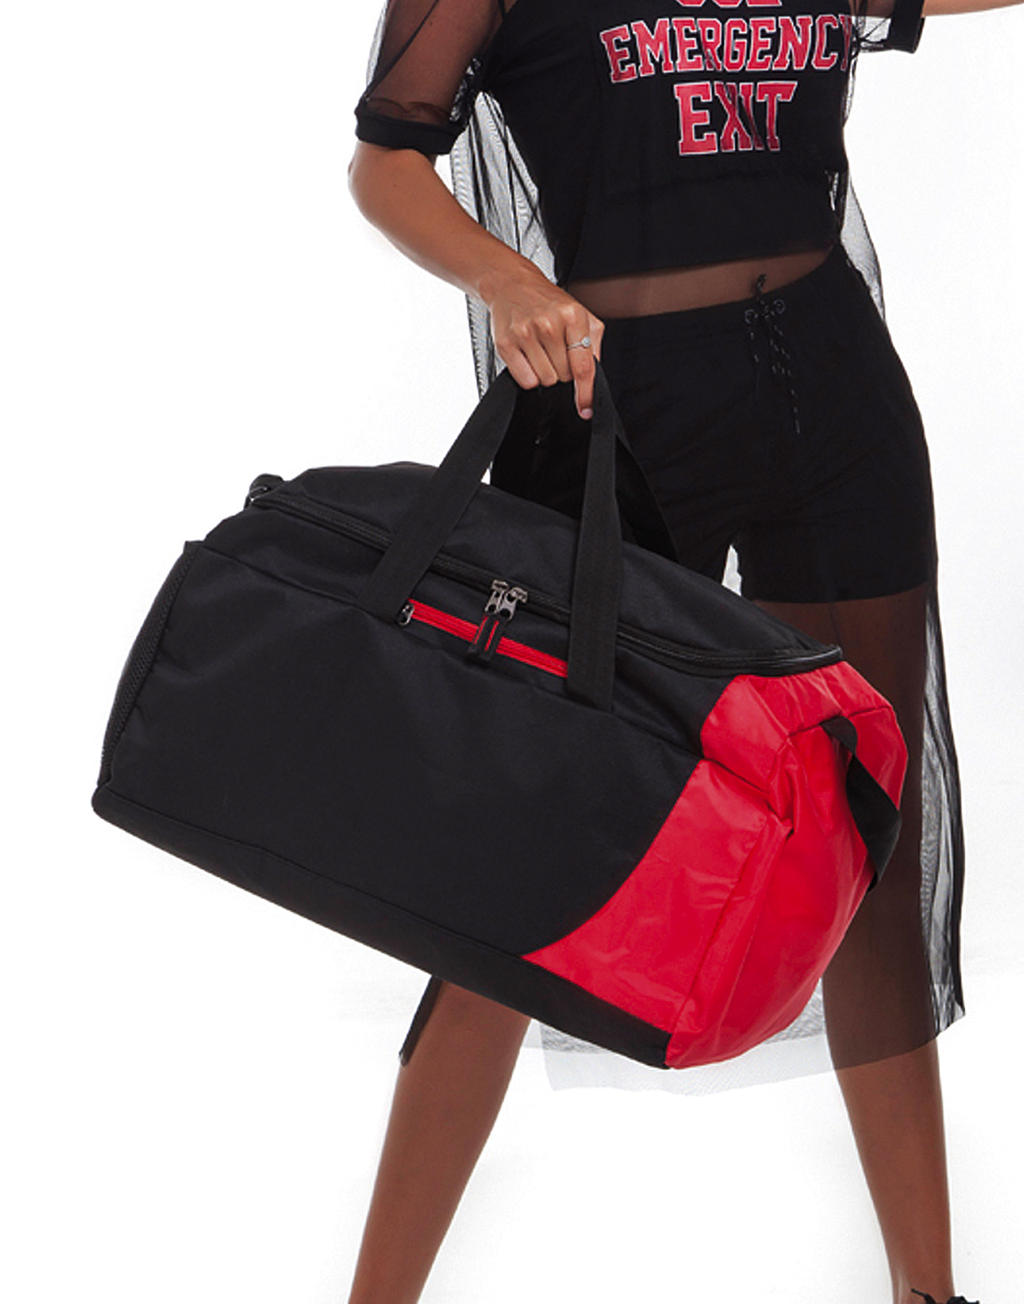  Naxos Sports Kit Bag in Farbe Black/Red